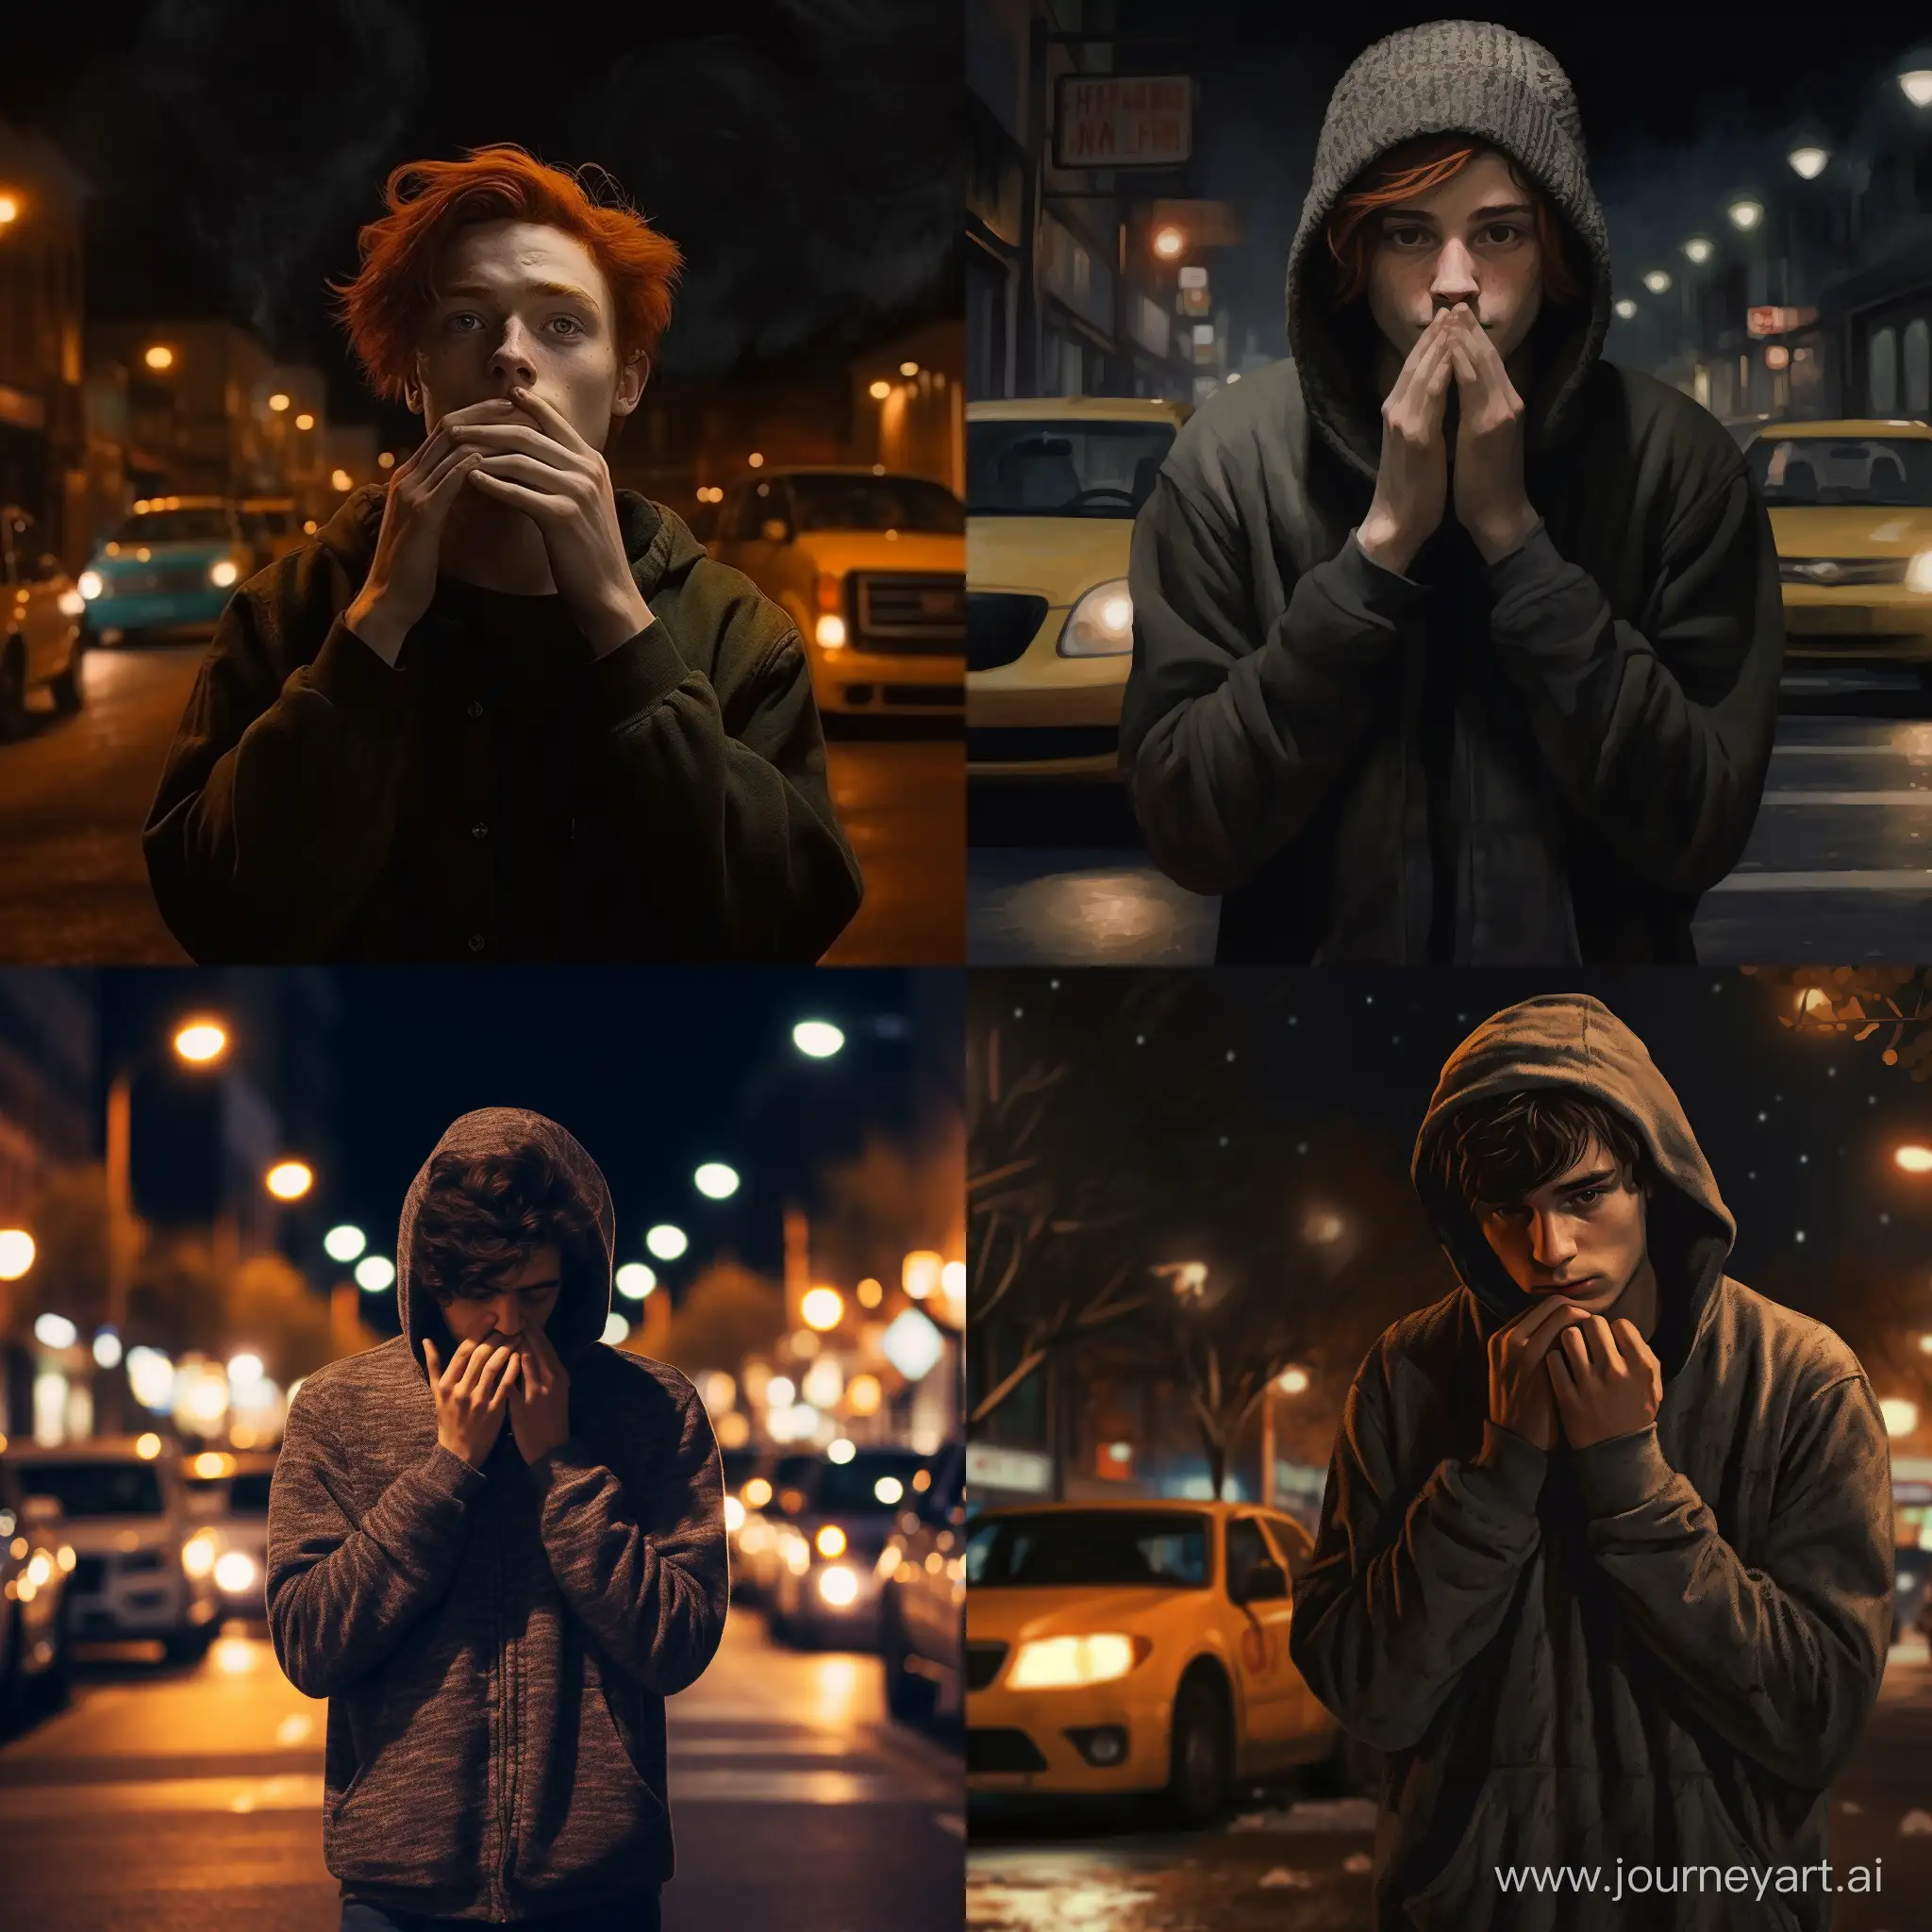 молодой парень с веснушками стоит на улице ночью, прикрывая своё лицо двумя руками, по улице едут машины, а он тепло одет